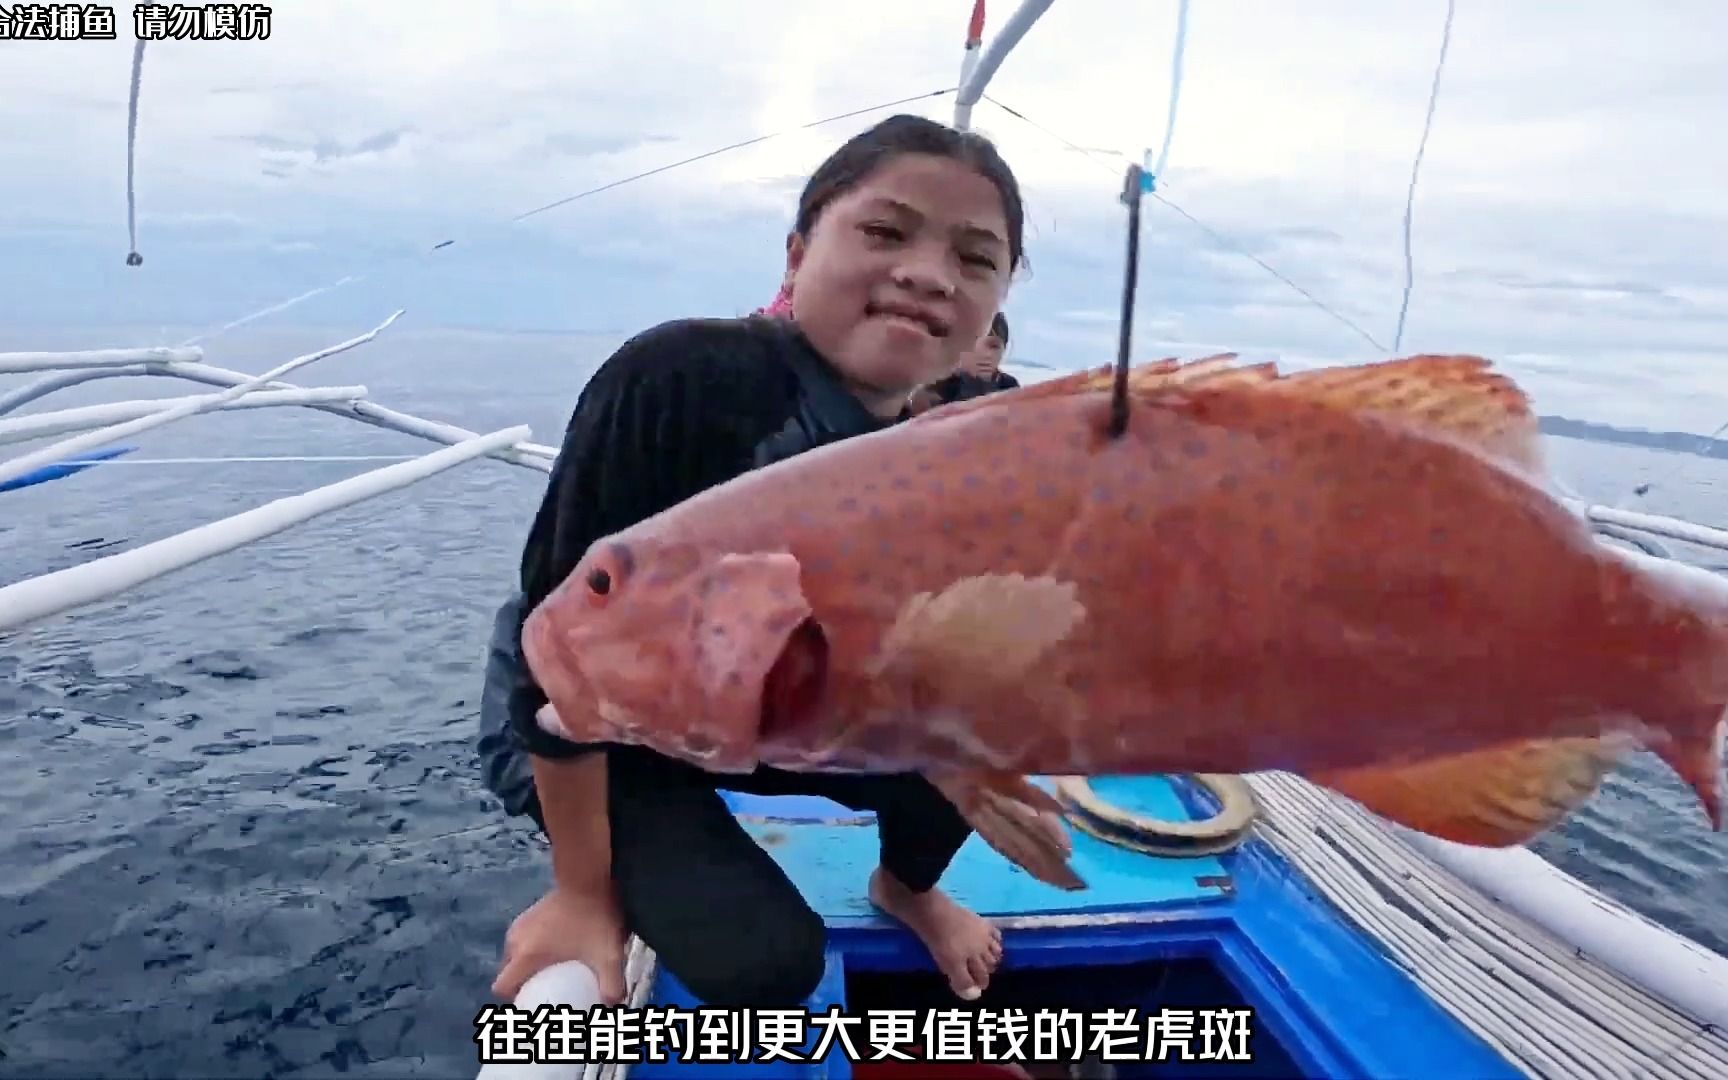 苏眉鱼2000元一斤图片